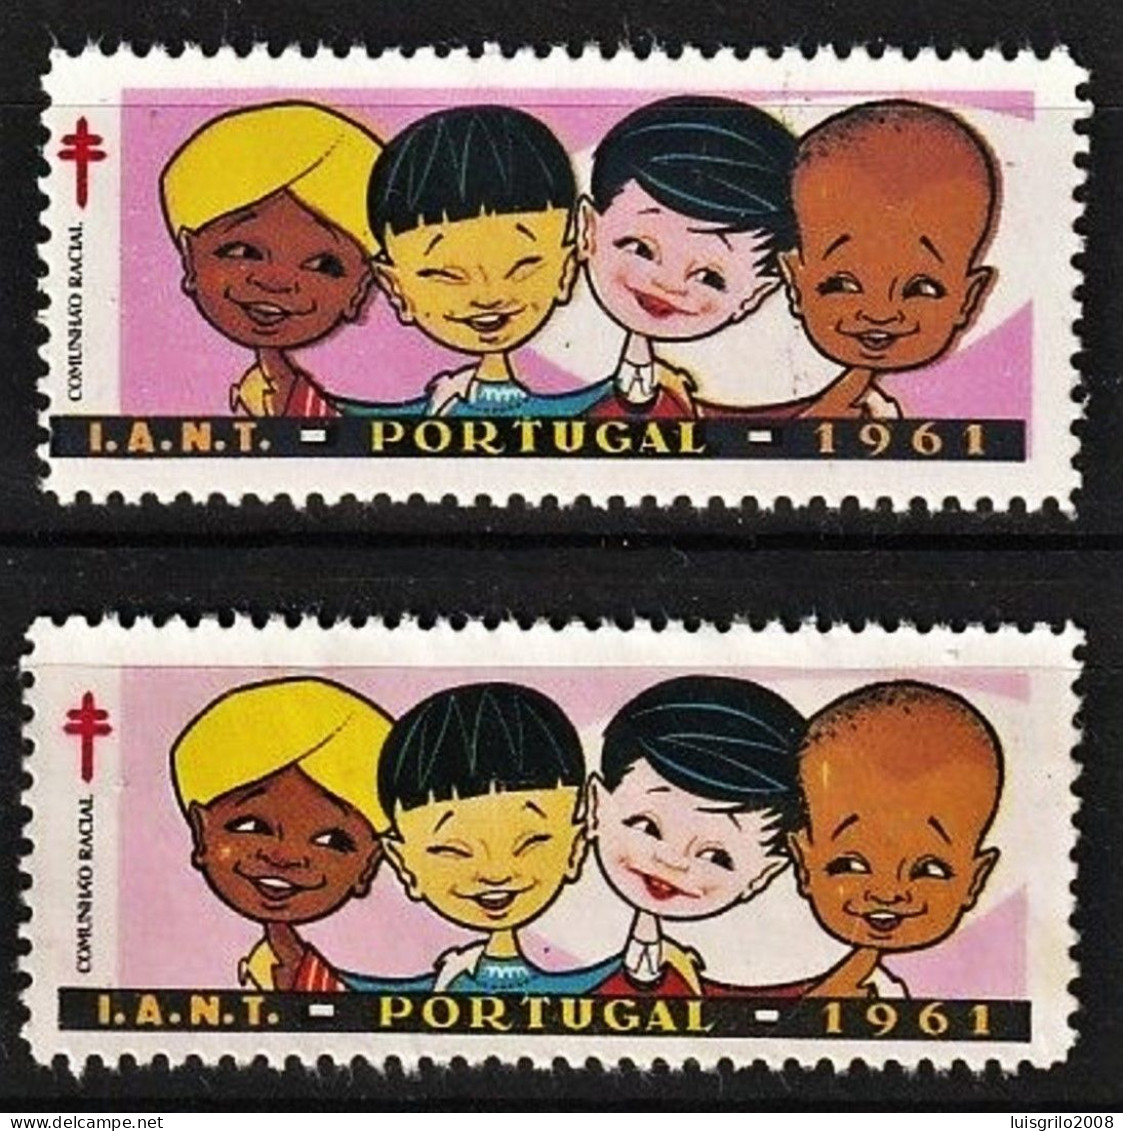 Vignettes/ Vinhetas, Portugal 1961 - Comunhão Racial, I.A.N.T. -||-  Série Complète - MNH - Emissions Locales